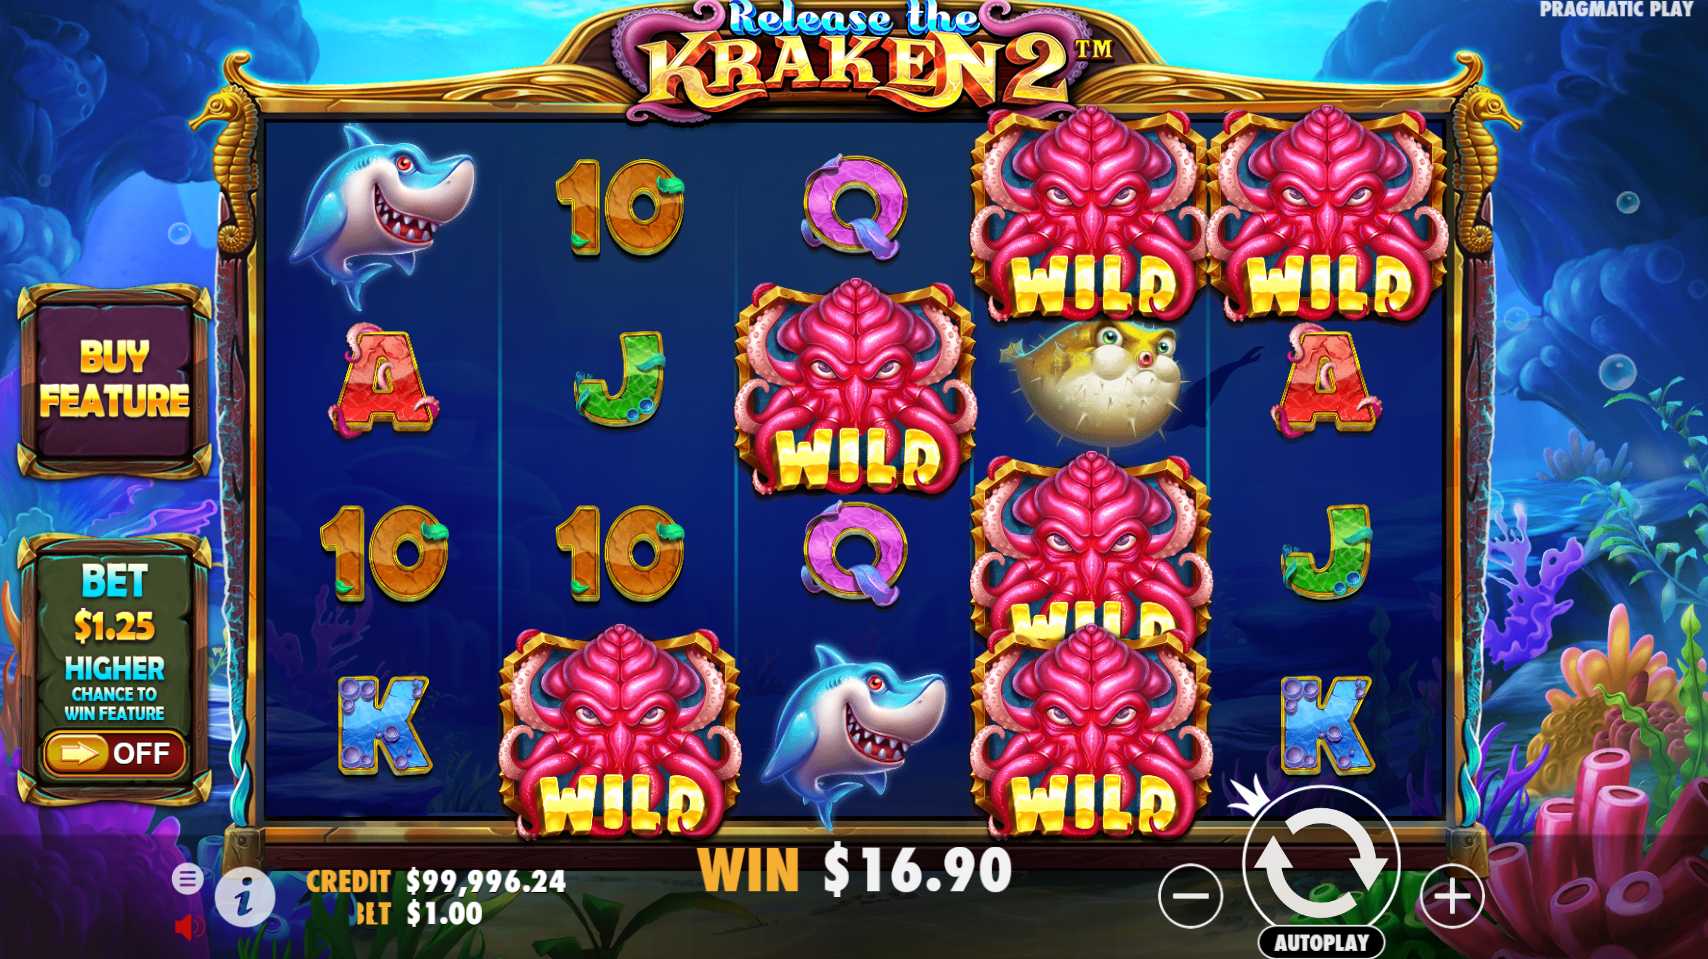 Release The Kraken 2 pragmatic play slot online demo